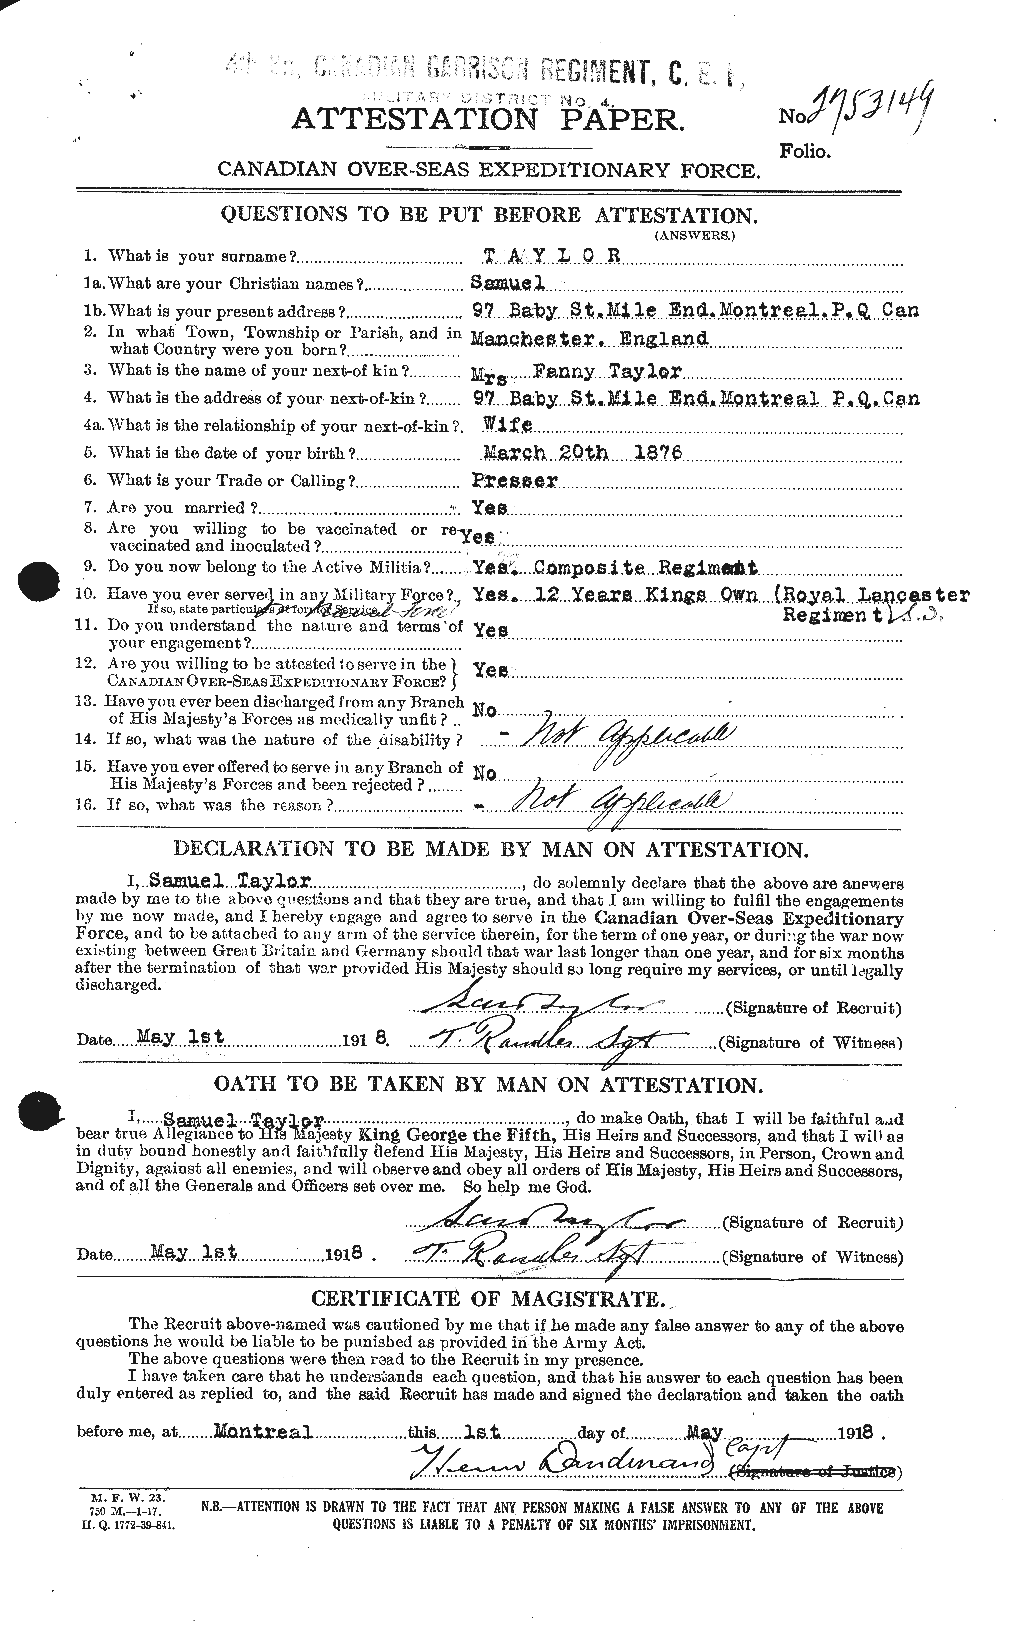 Dossiers du Personnel de la Première Guerre mondiale - CEC 627865a